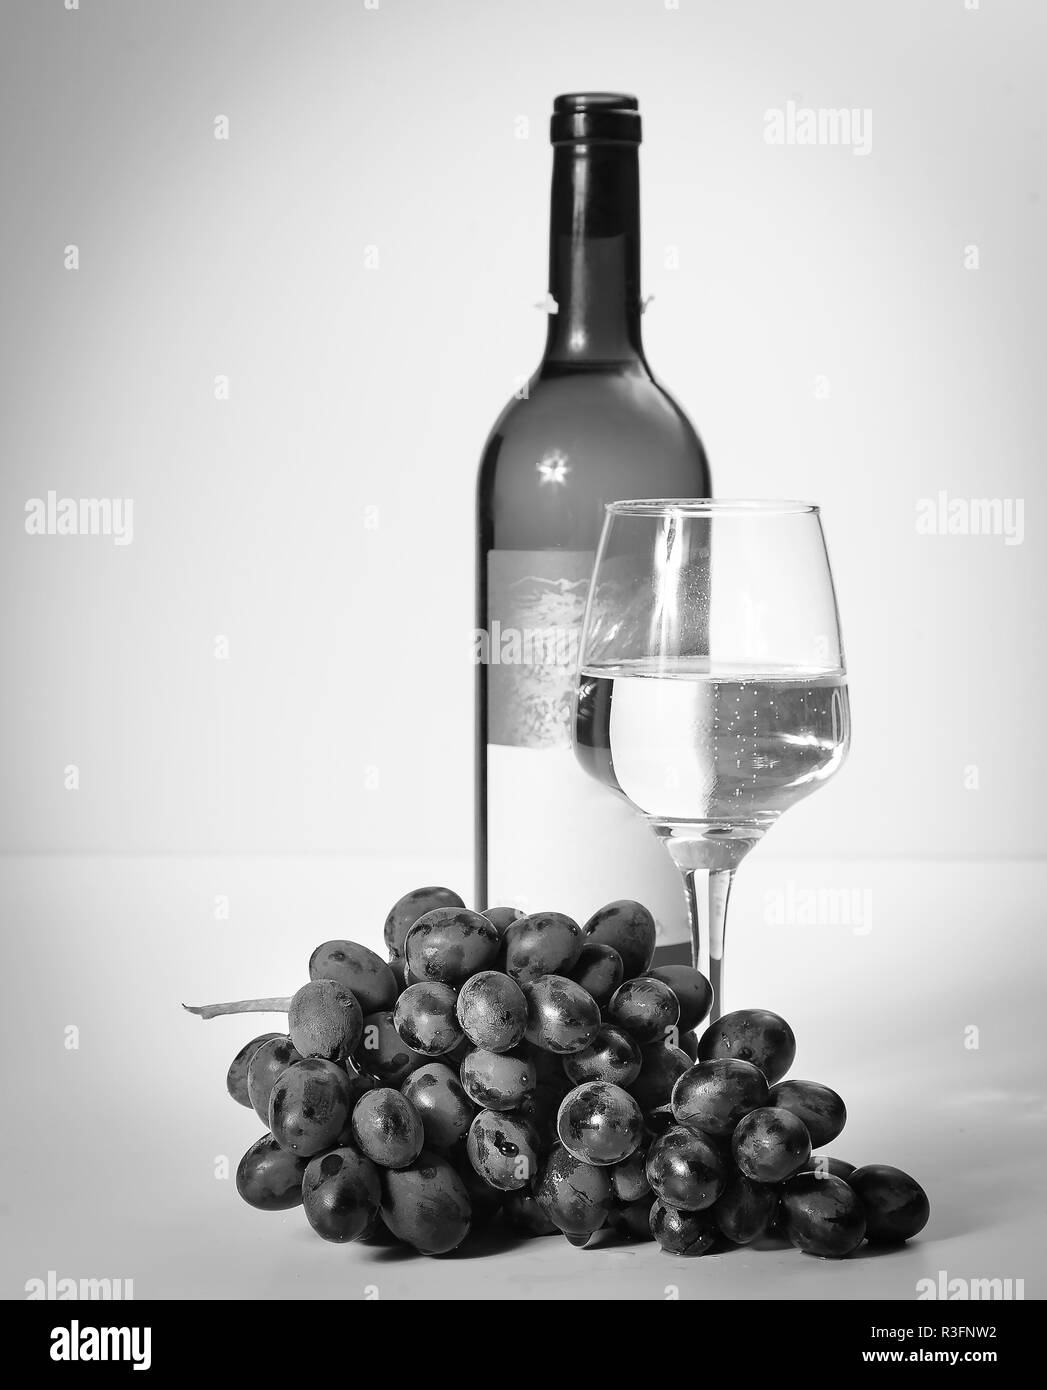 Un verre de vin blanc, une grappe de raisins, une bouteille ouverte. Arrière-plan blanc. Banque D'Images